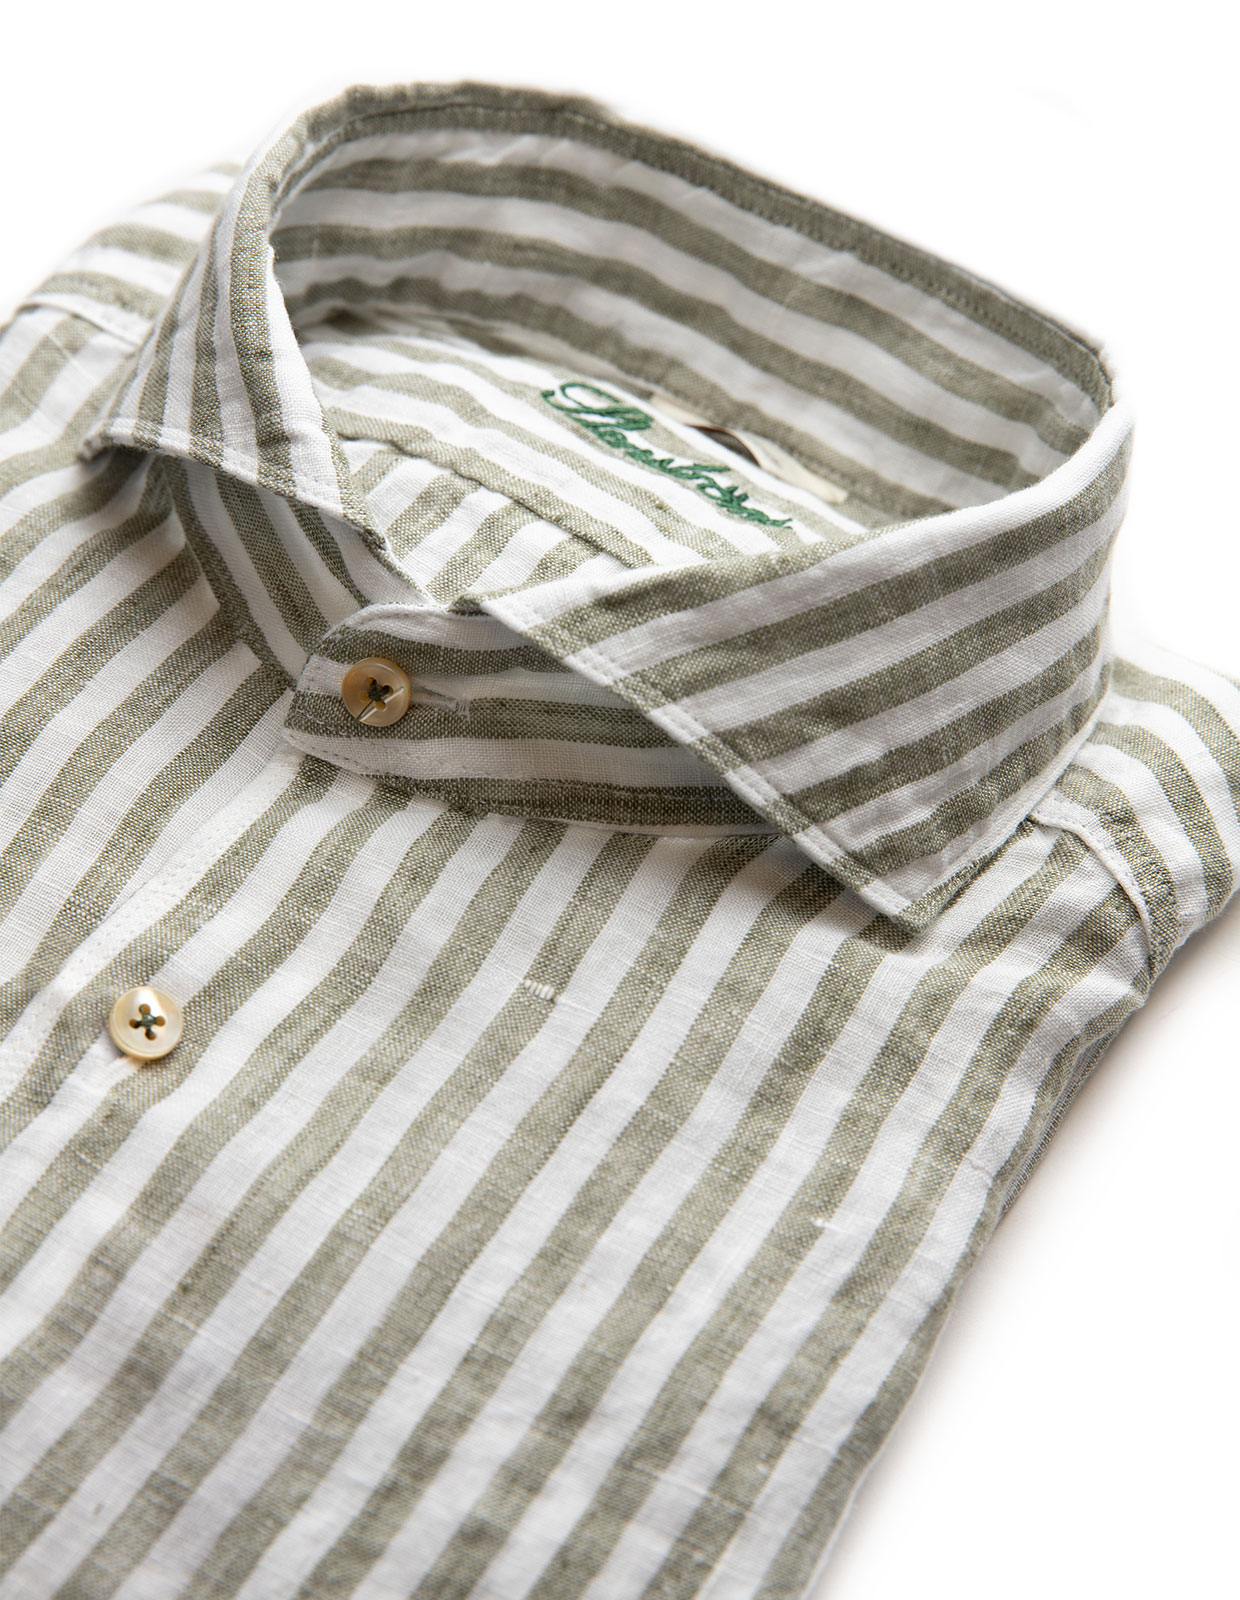 Slimline Shirt Striped Linen Sage/White